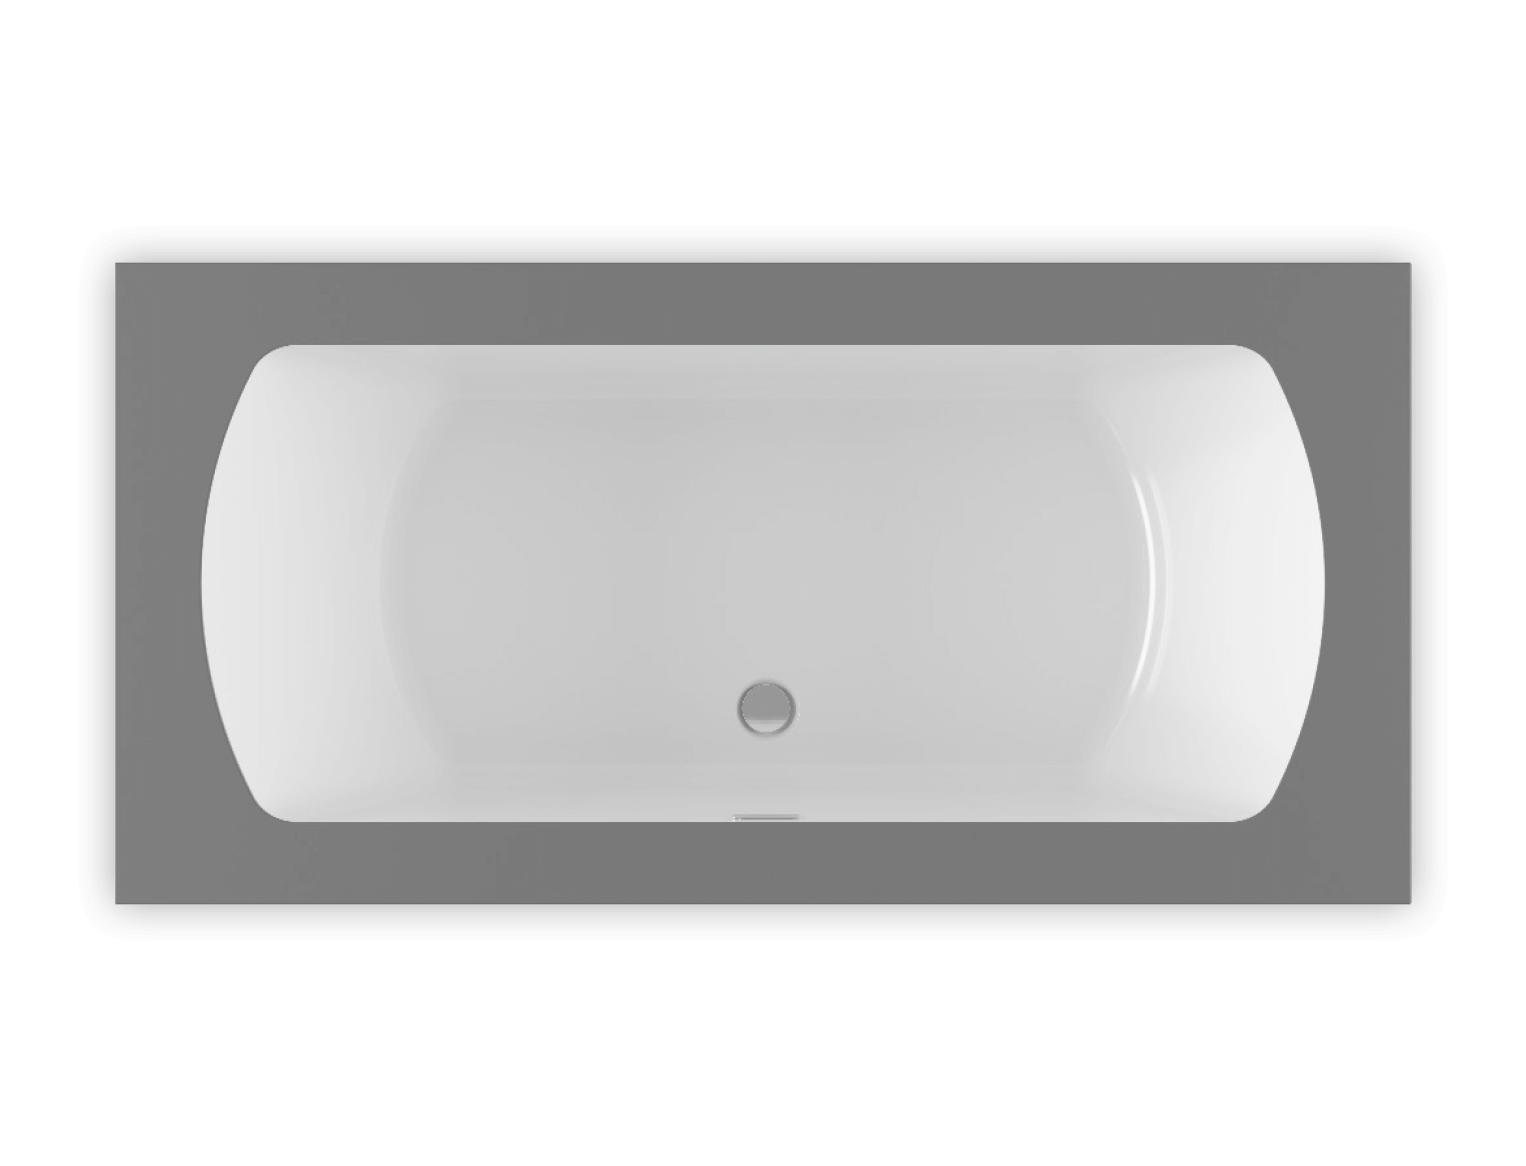 Monarch 7236 air jet bathtub for your modern bathroom